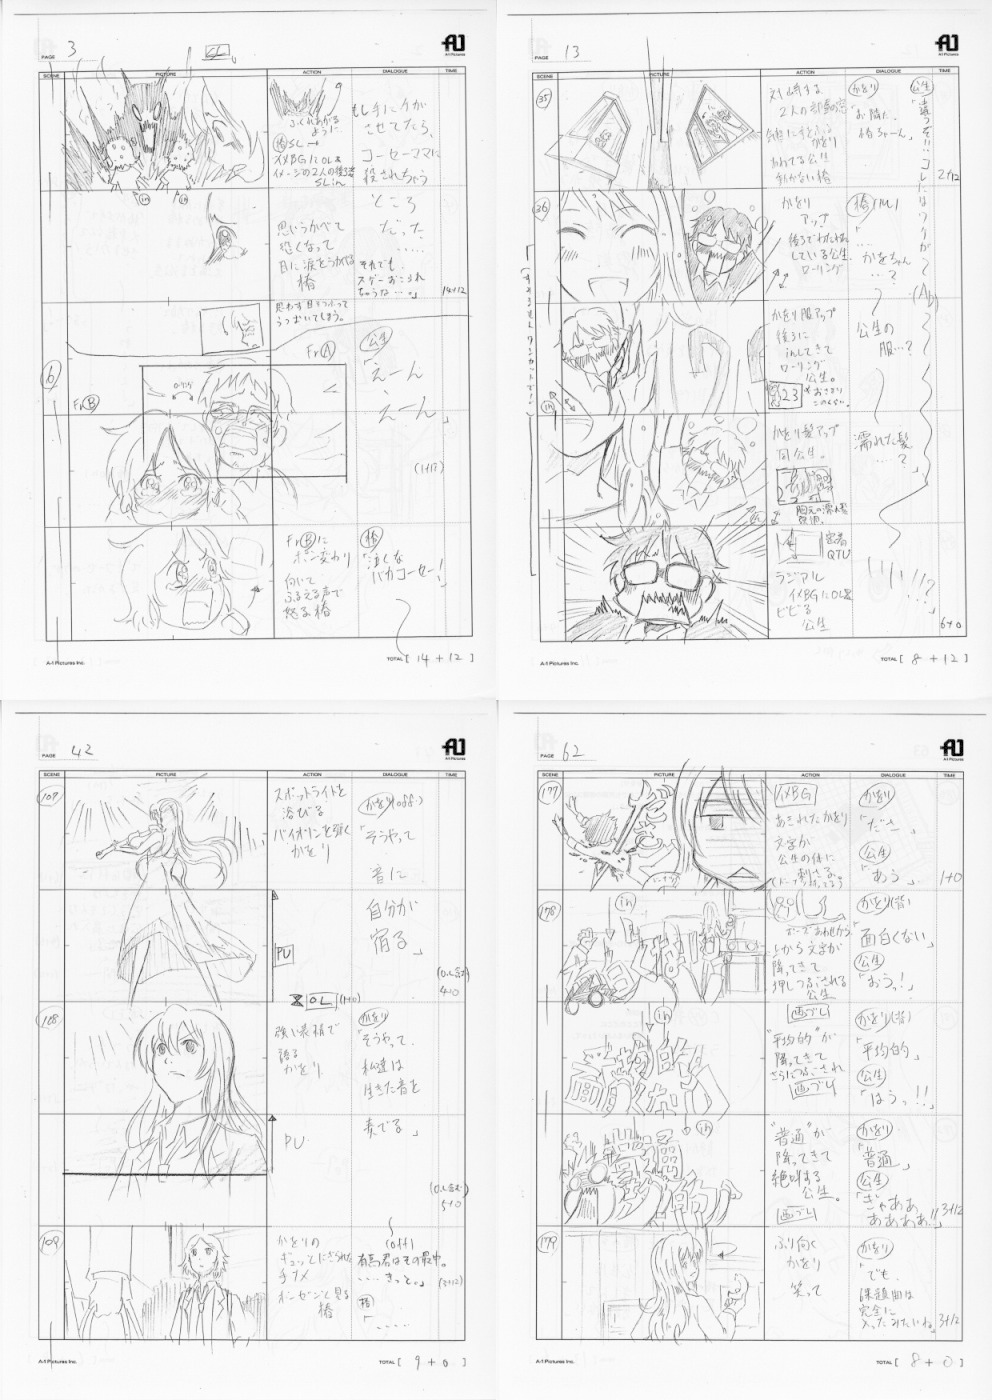 production_materials shigatsu_wa_kimi_no_uso storyboard yoshihide_ibata